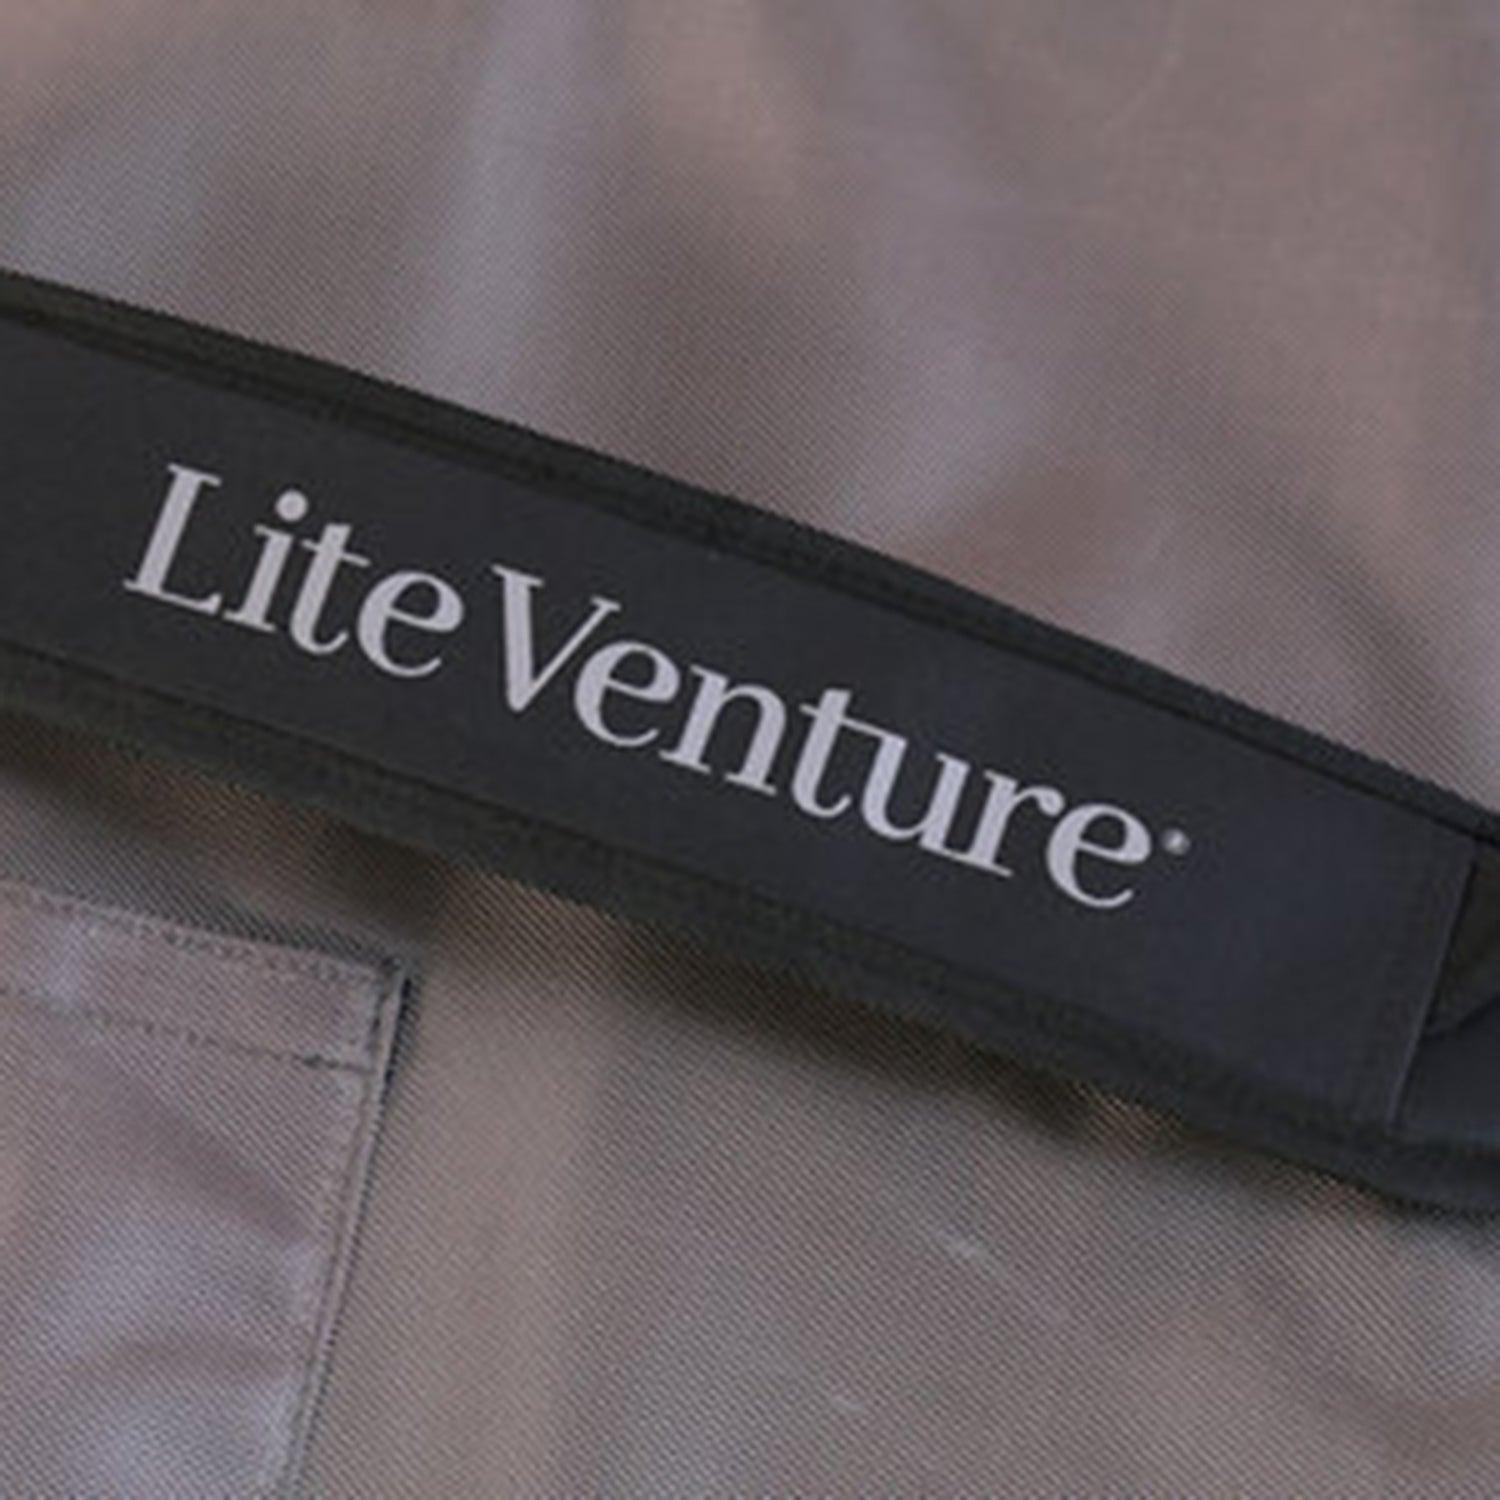 Produktbild von zubehör " Board Bag für Hardboards " der Marke Lite Venture für 189.00 €. Erhältlich online bei Lite Venture ( www.liteventure.de )